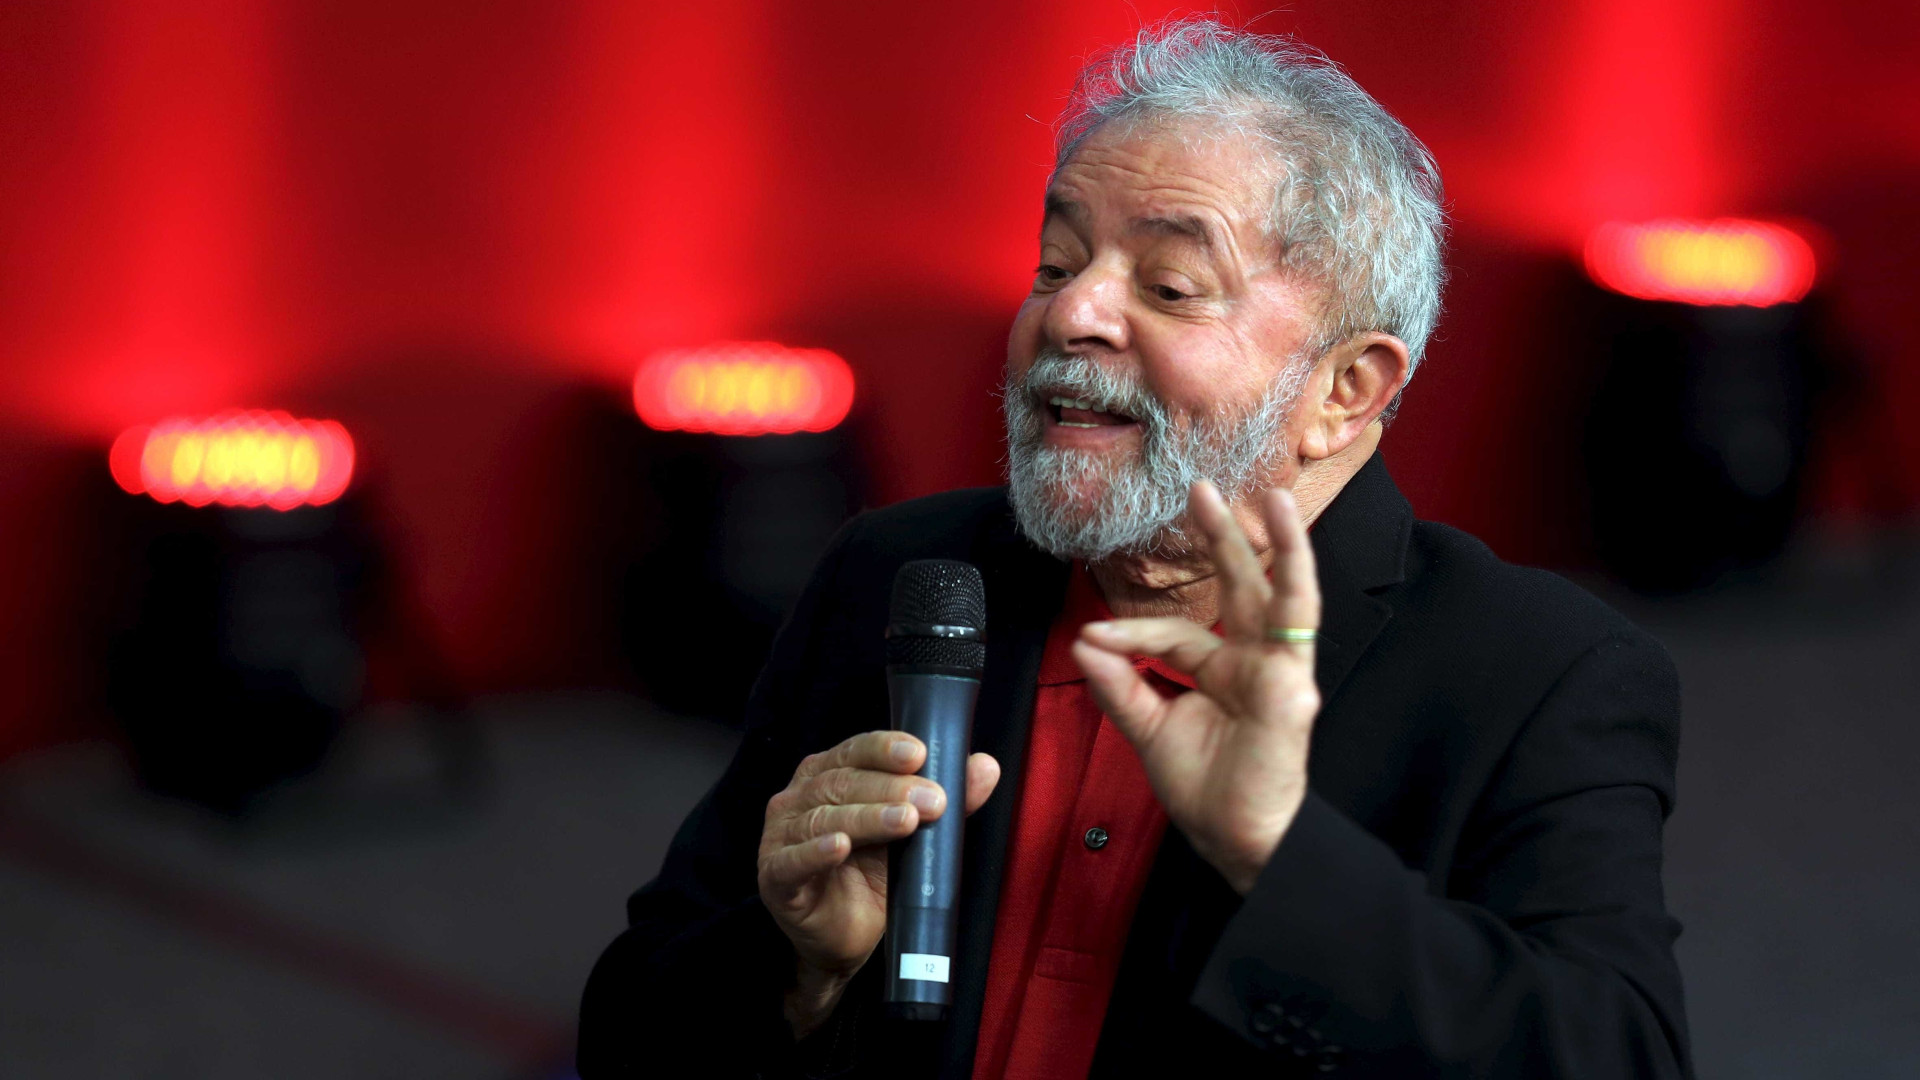 Depoimento: Lula critica 'denuncismo' e diz estar 'cansado de mentiras'